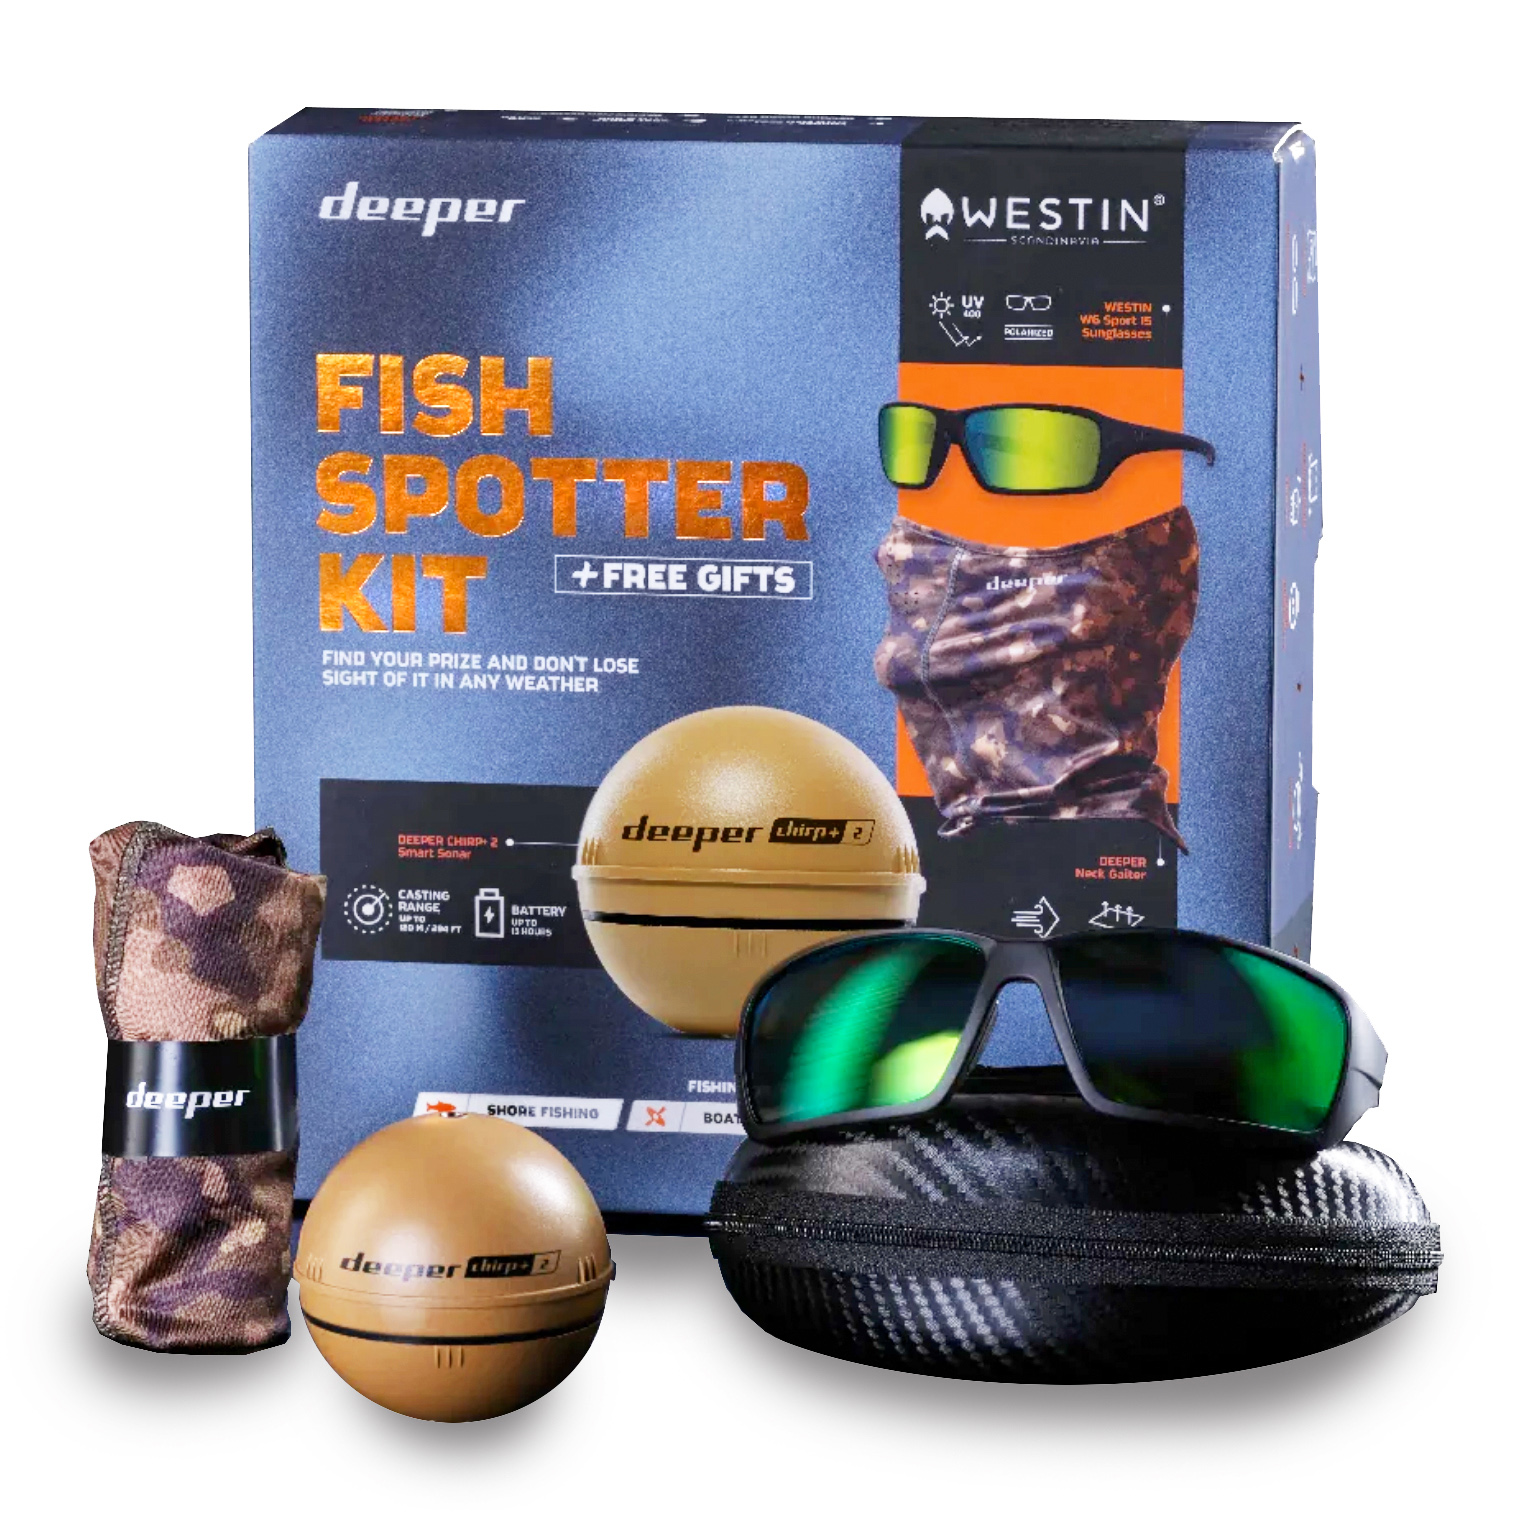 Deeper Fish Spotter Fishfinder Kit